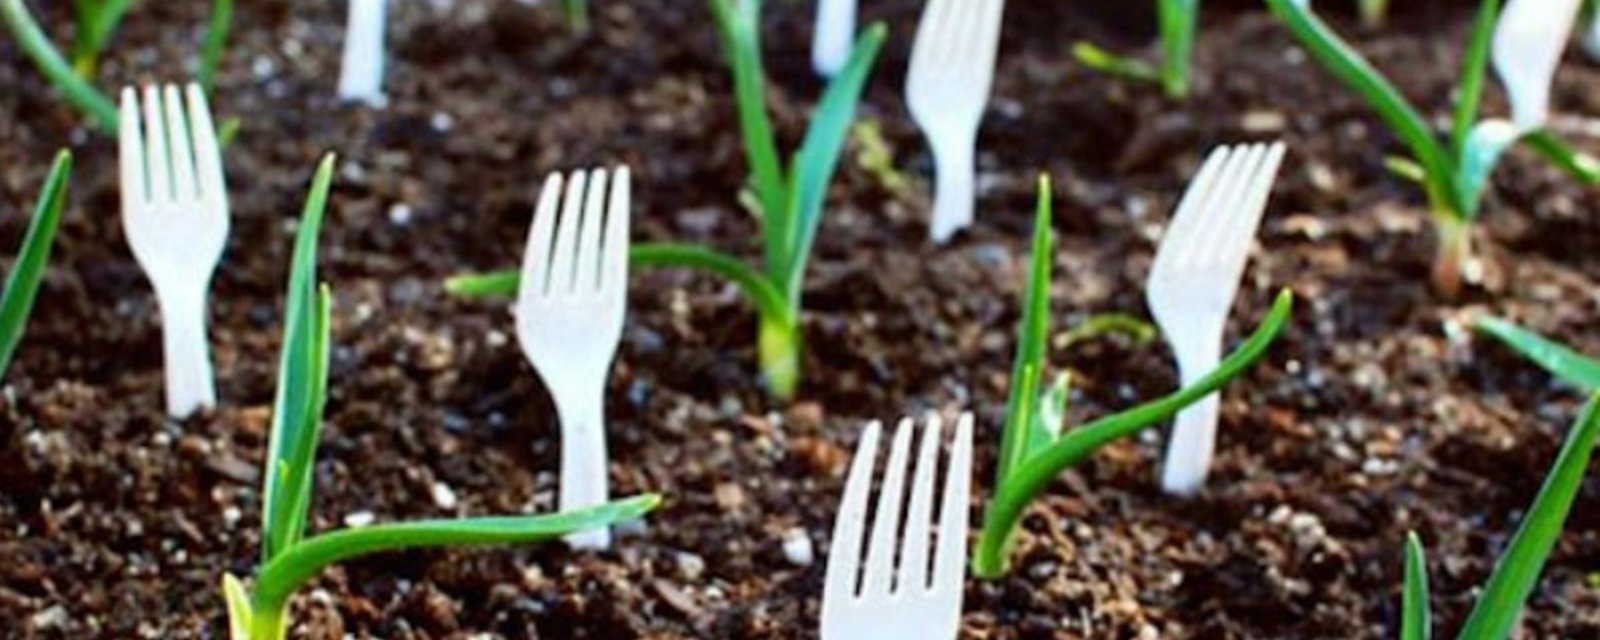 Plantez des fourchettes en plastique dans votre jardin et regardez ce qui arrive! Ou plutôt, ce qui n’arrivera plus!